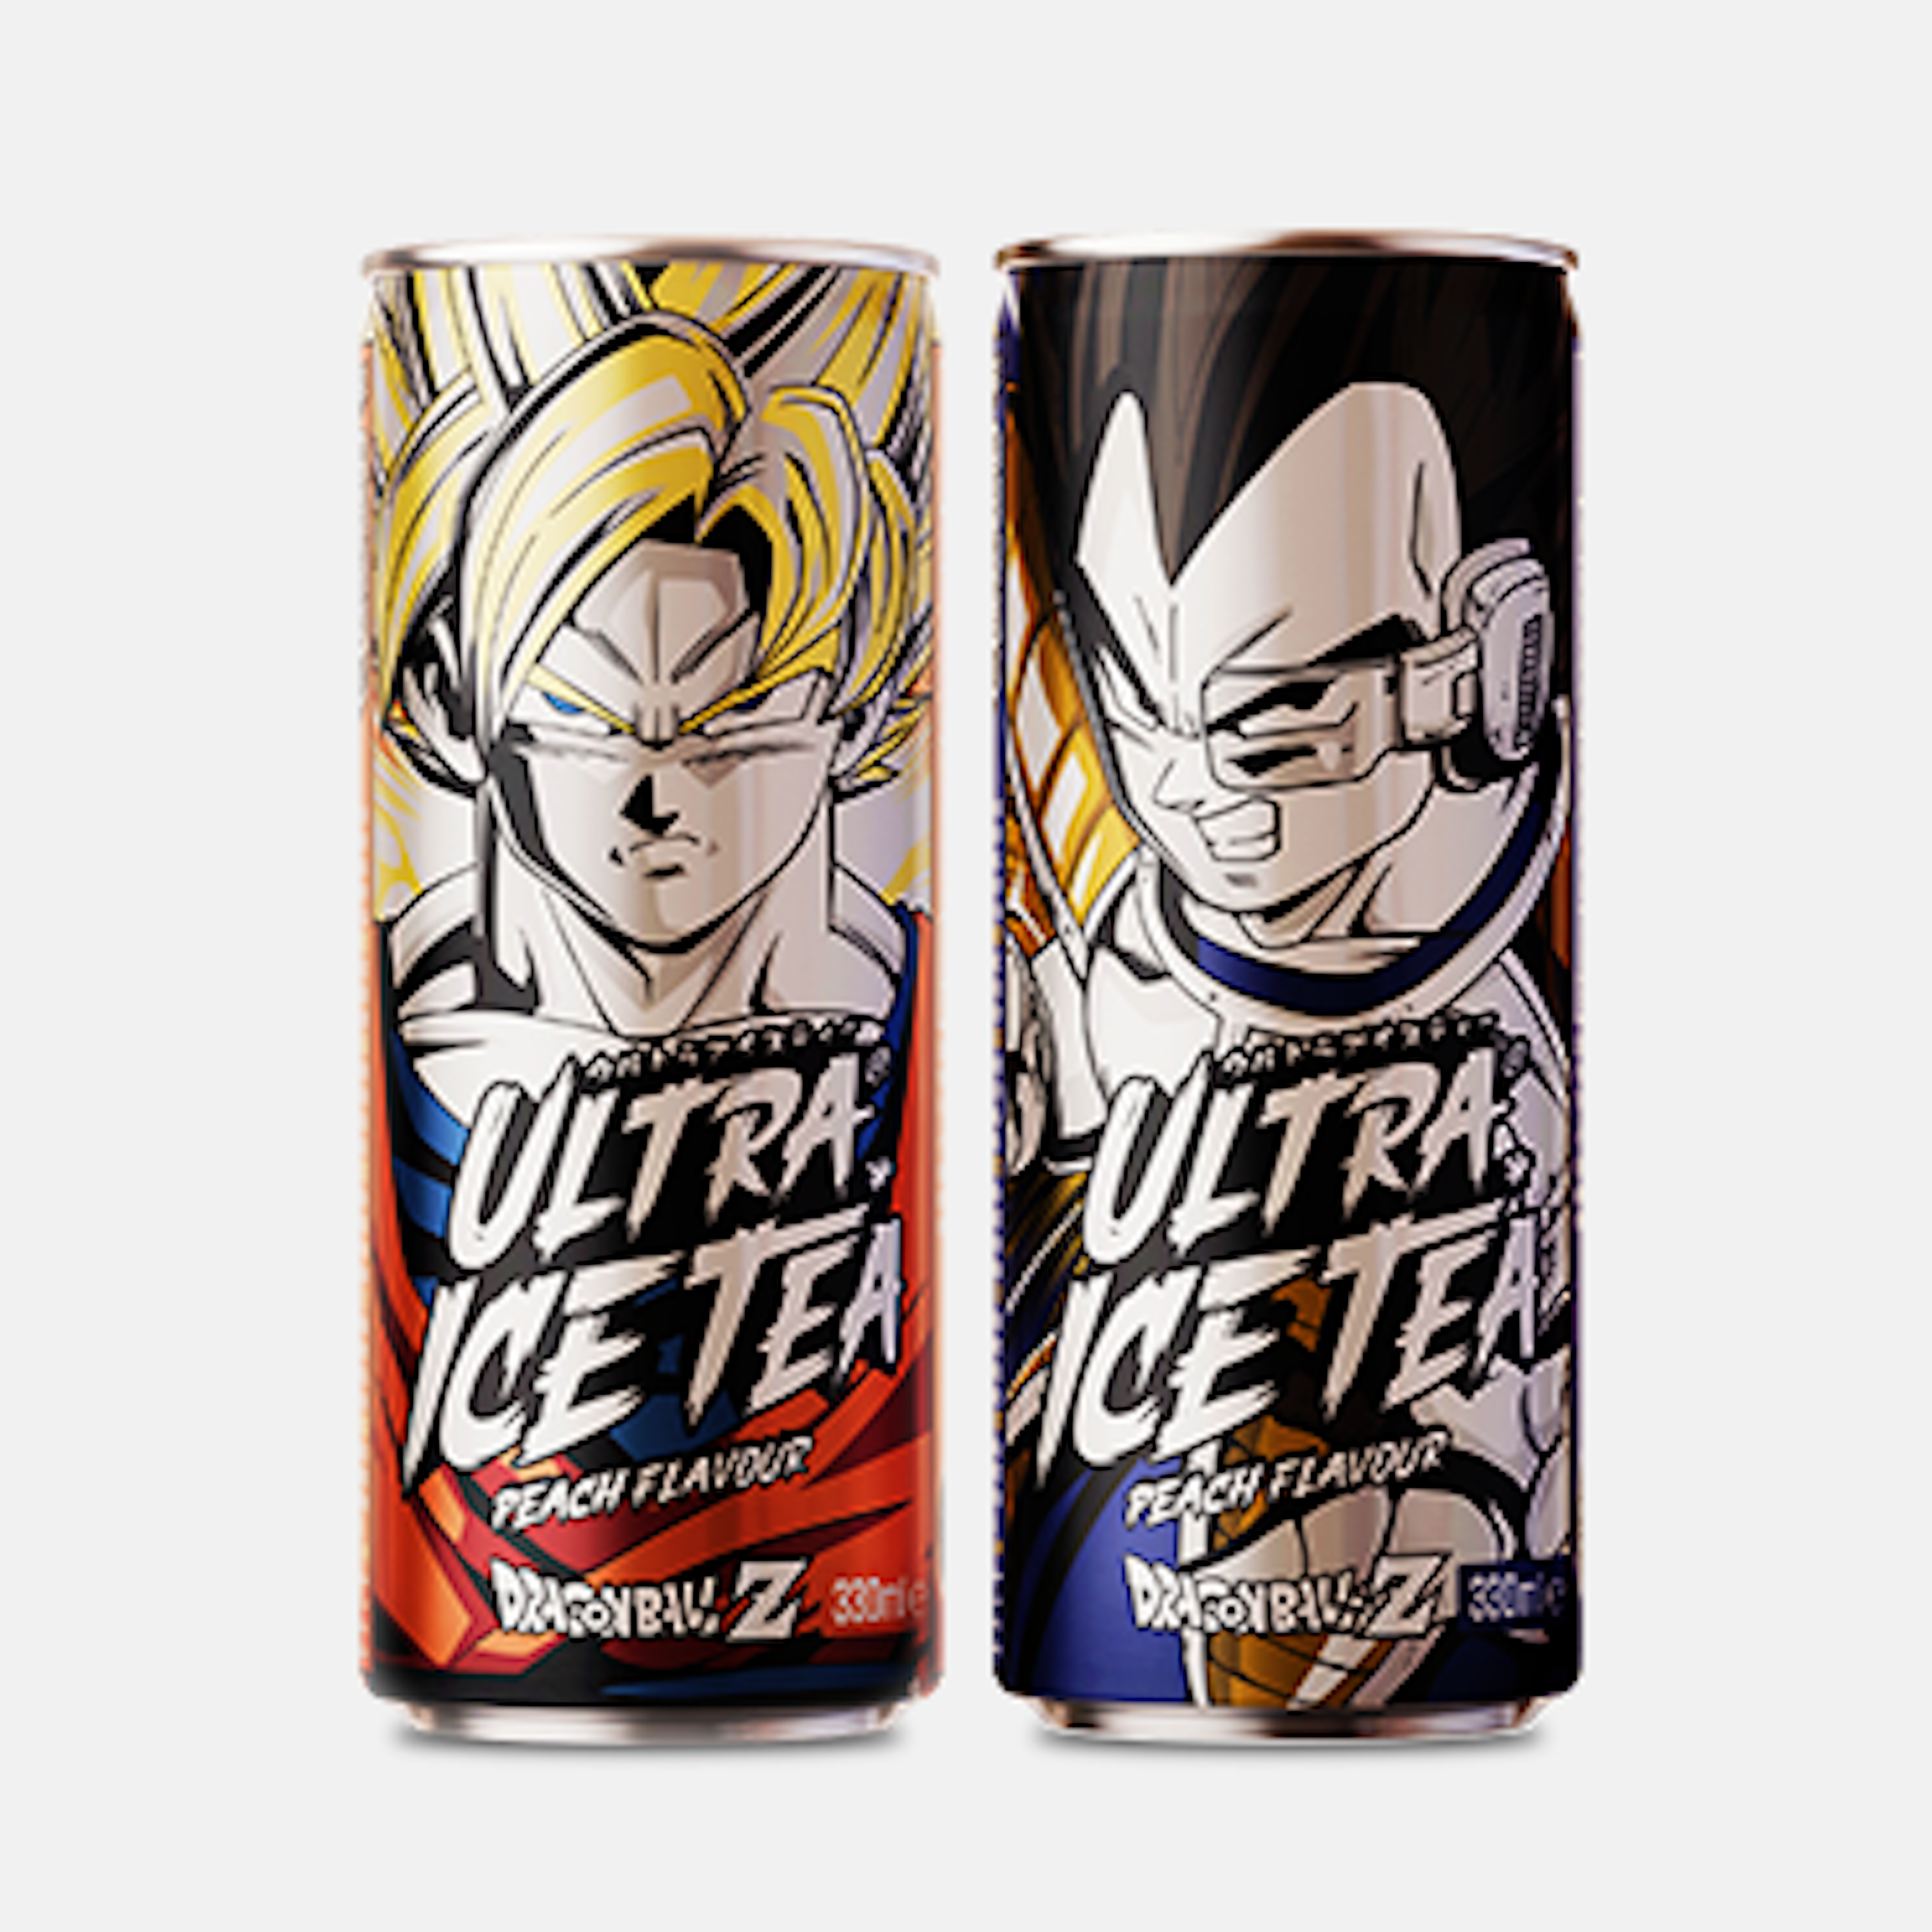 Dragon Ball Z Ultra Ice Tea Peach Flavour 330ml - ein Muss für Dragon Ball Fans